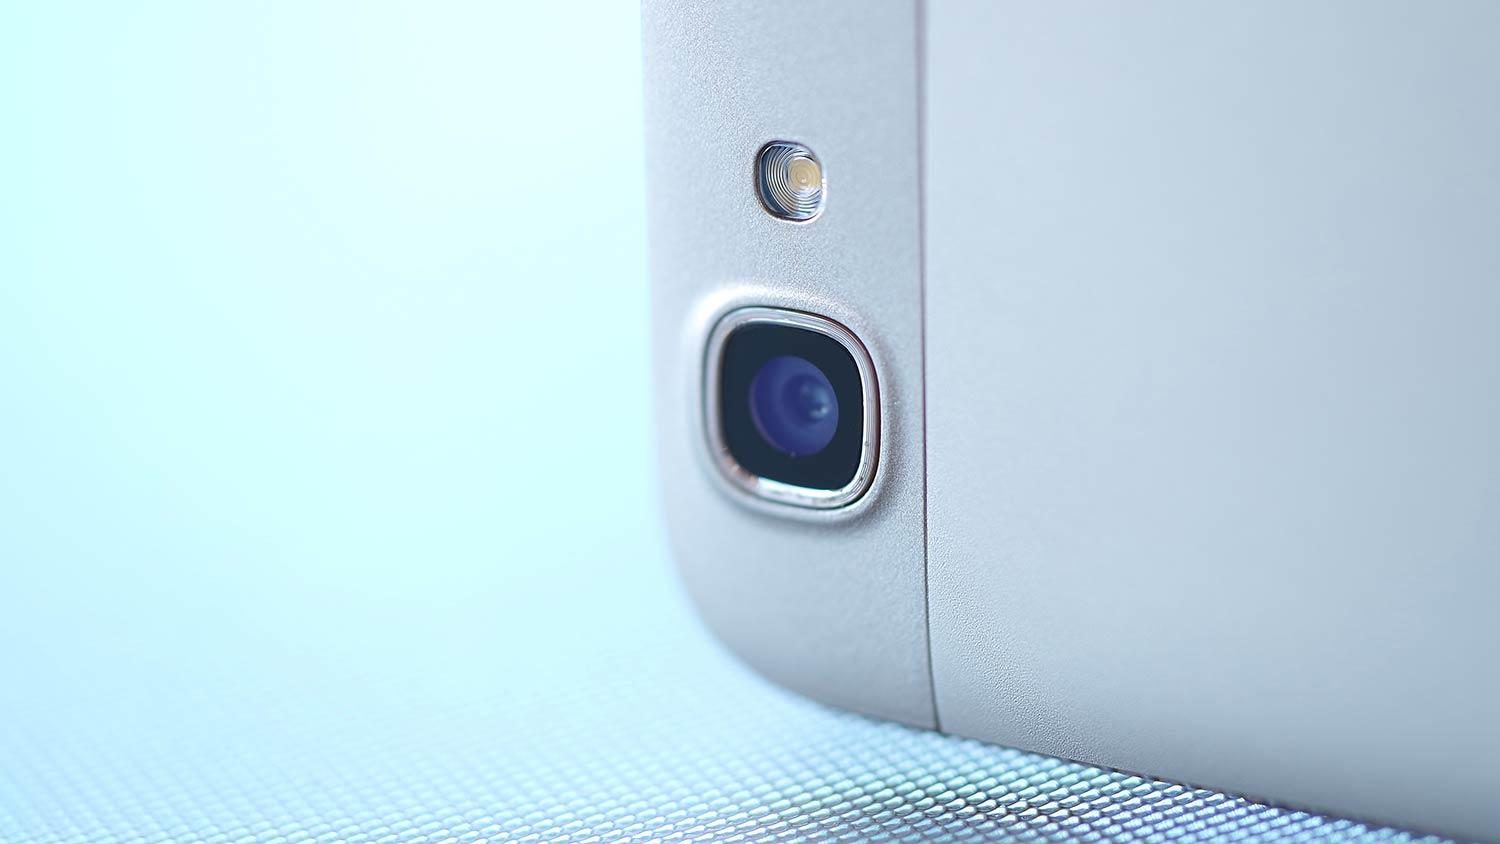 Huawei P8 LIte Smart cámara